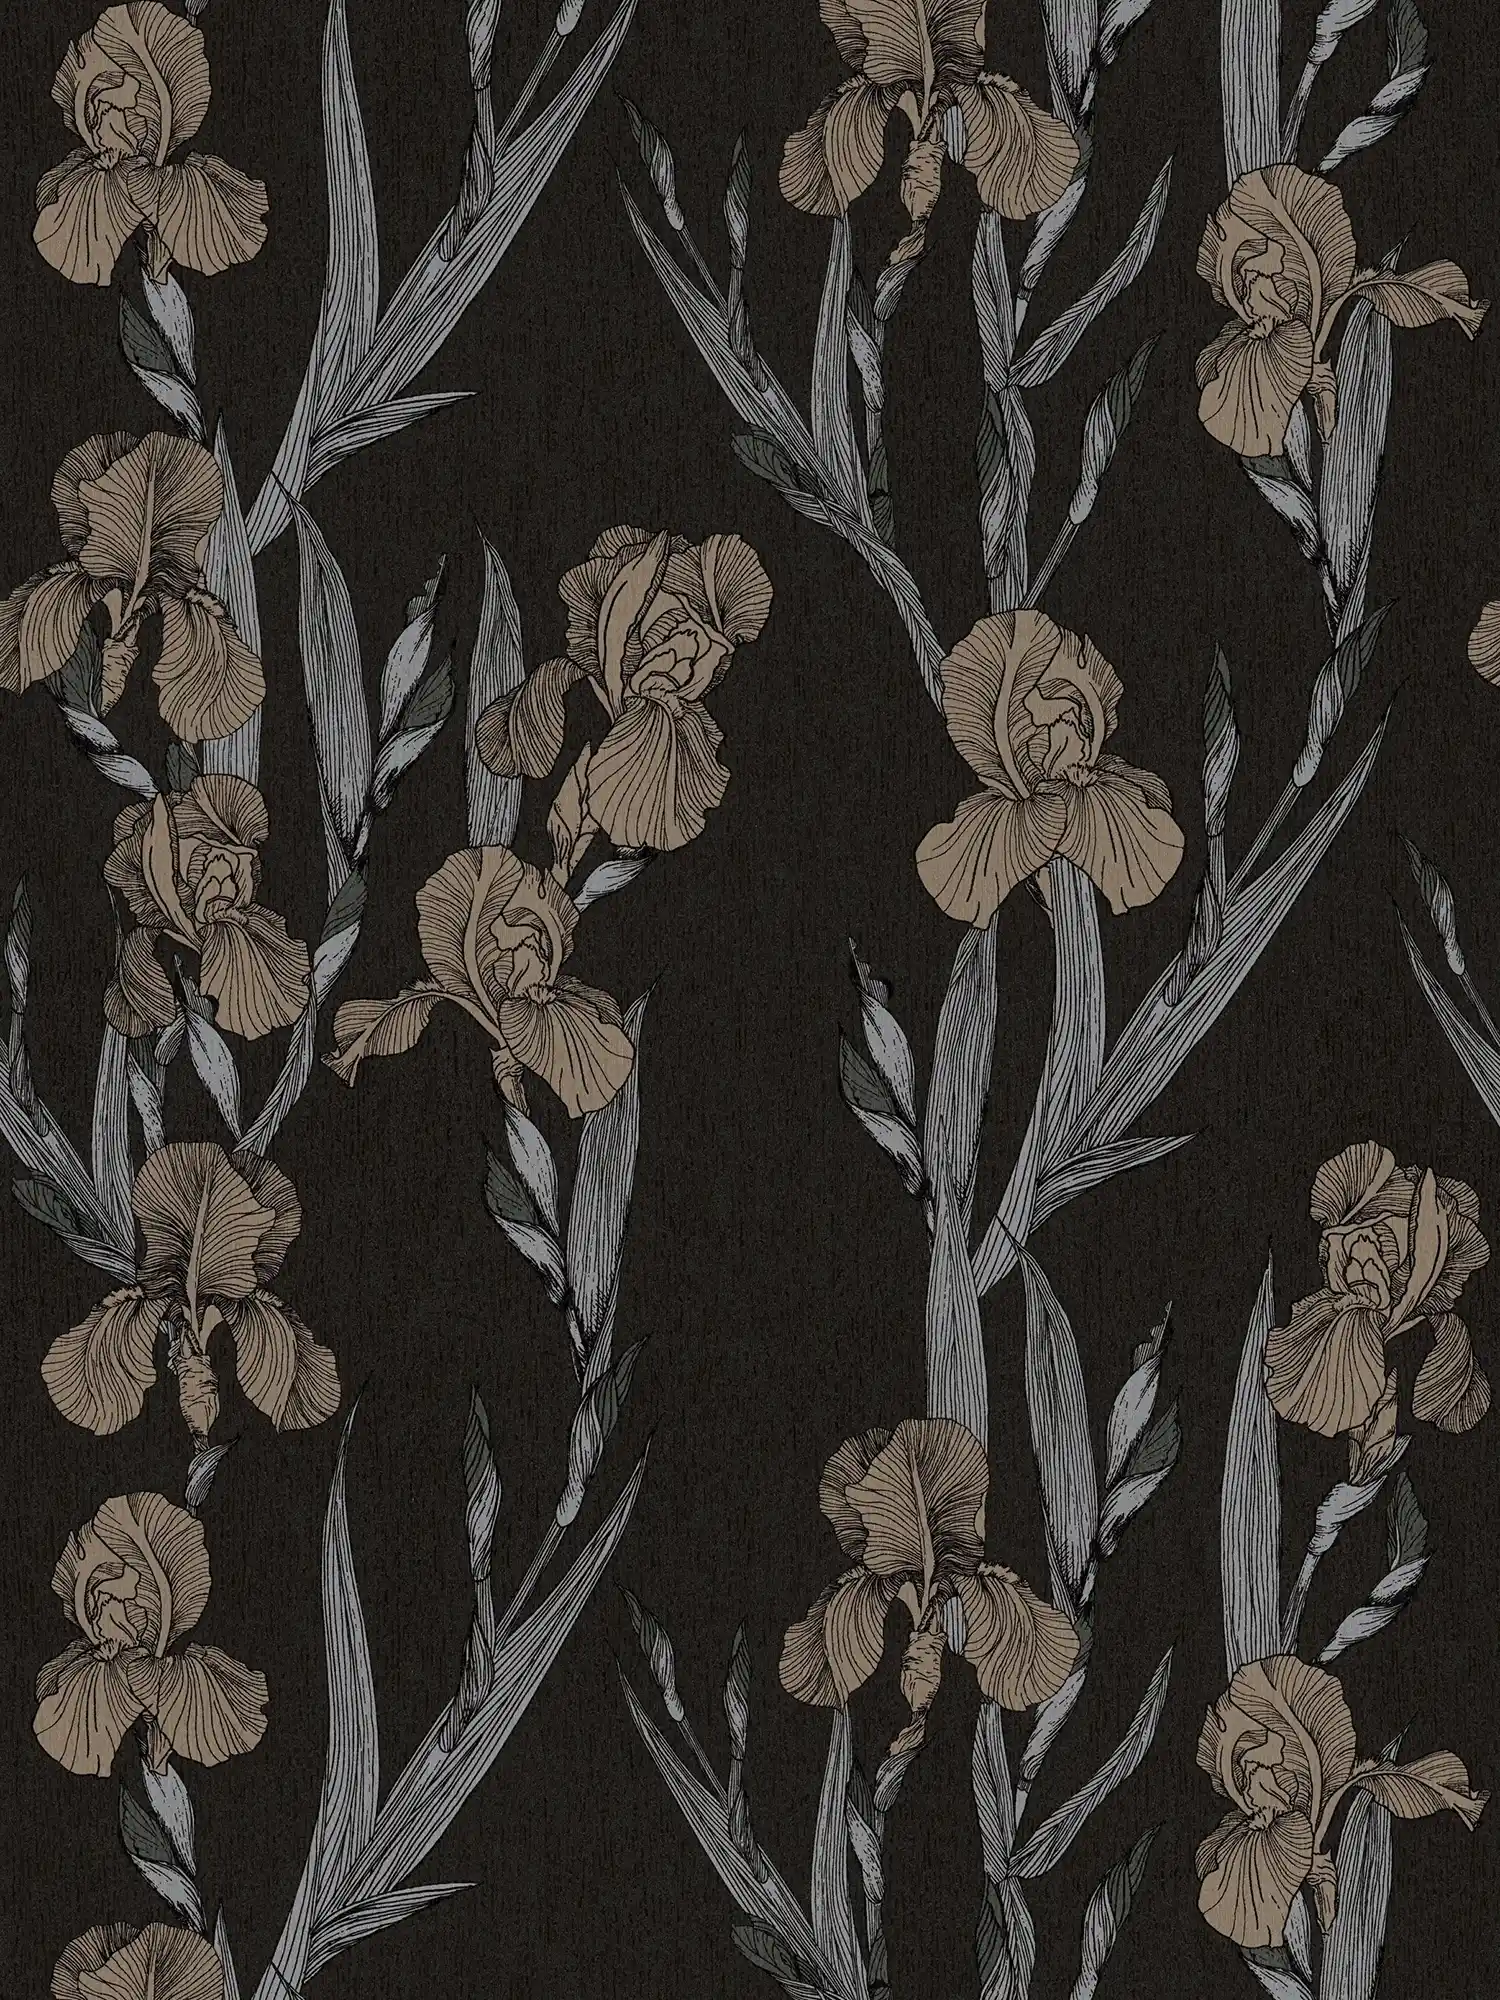             Florale Mustertapete mit Blüten im Zeichenstil – Schwarz, Grau, Braun
        